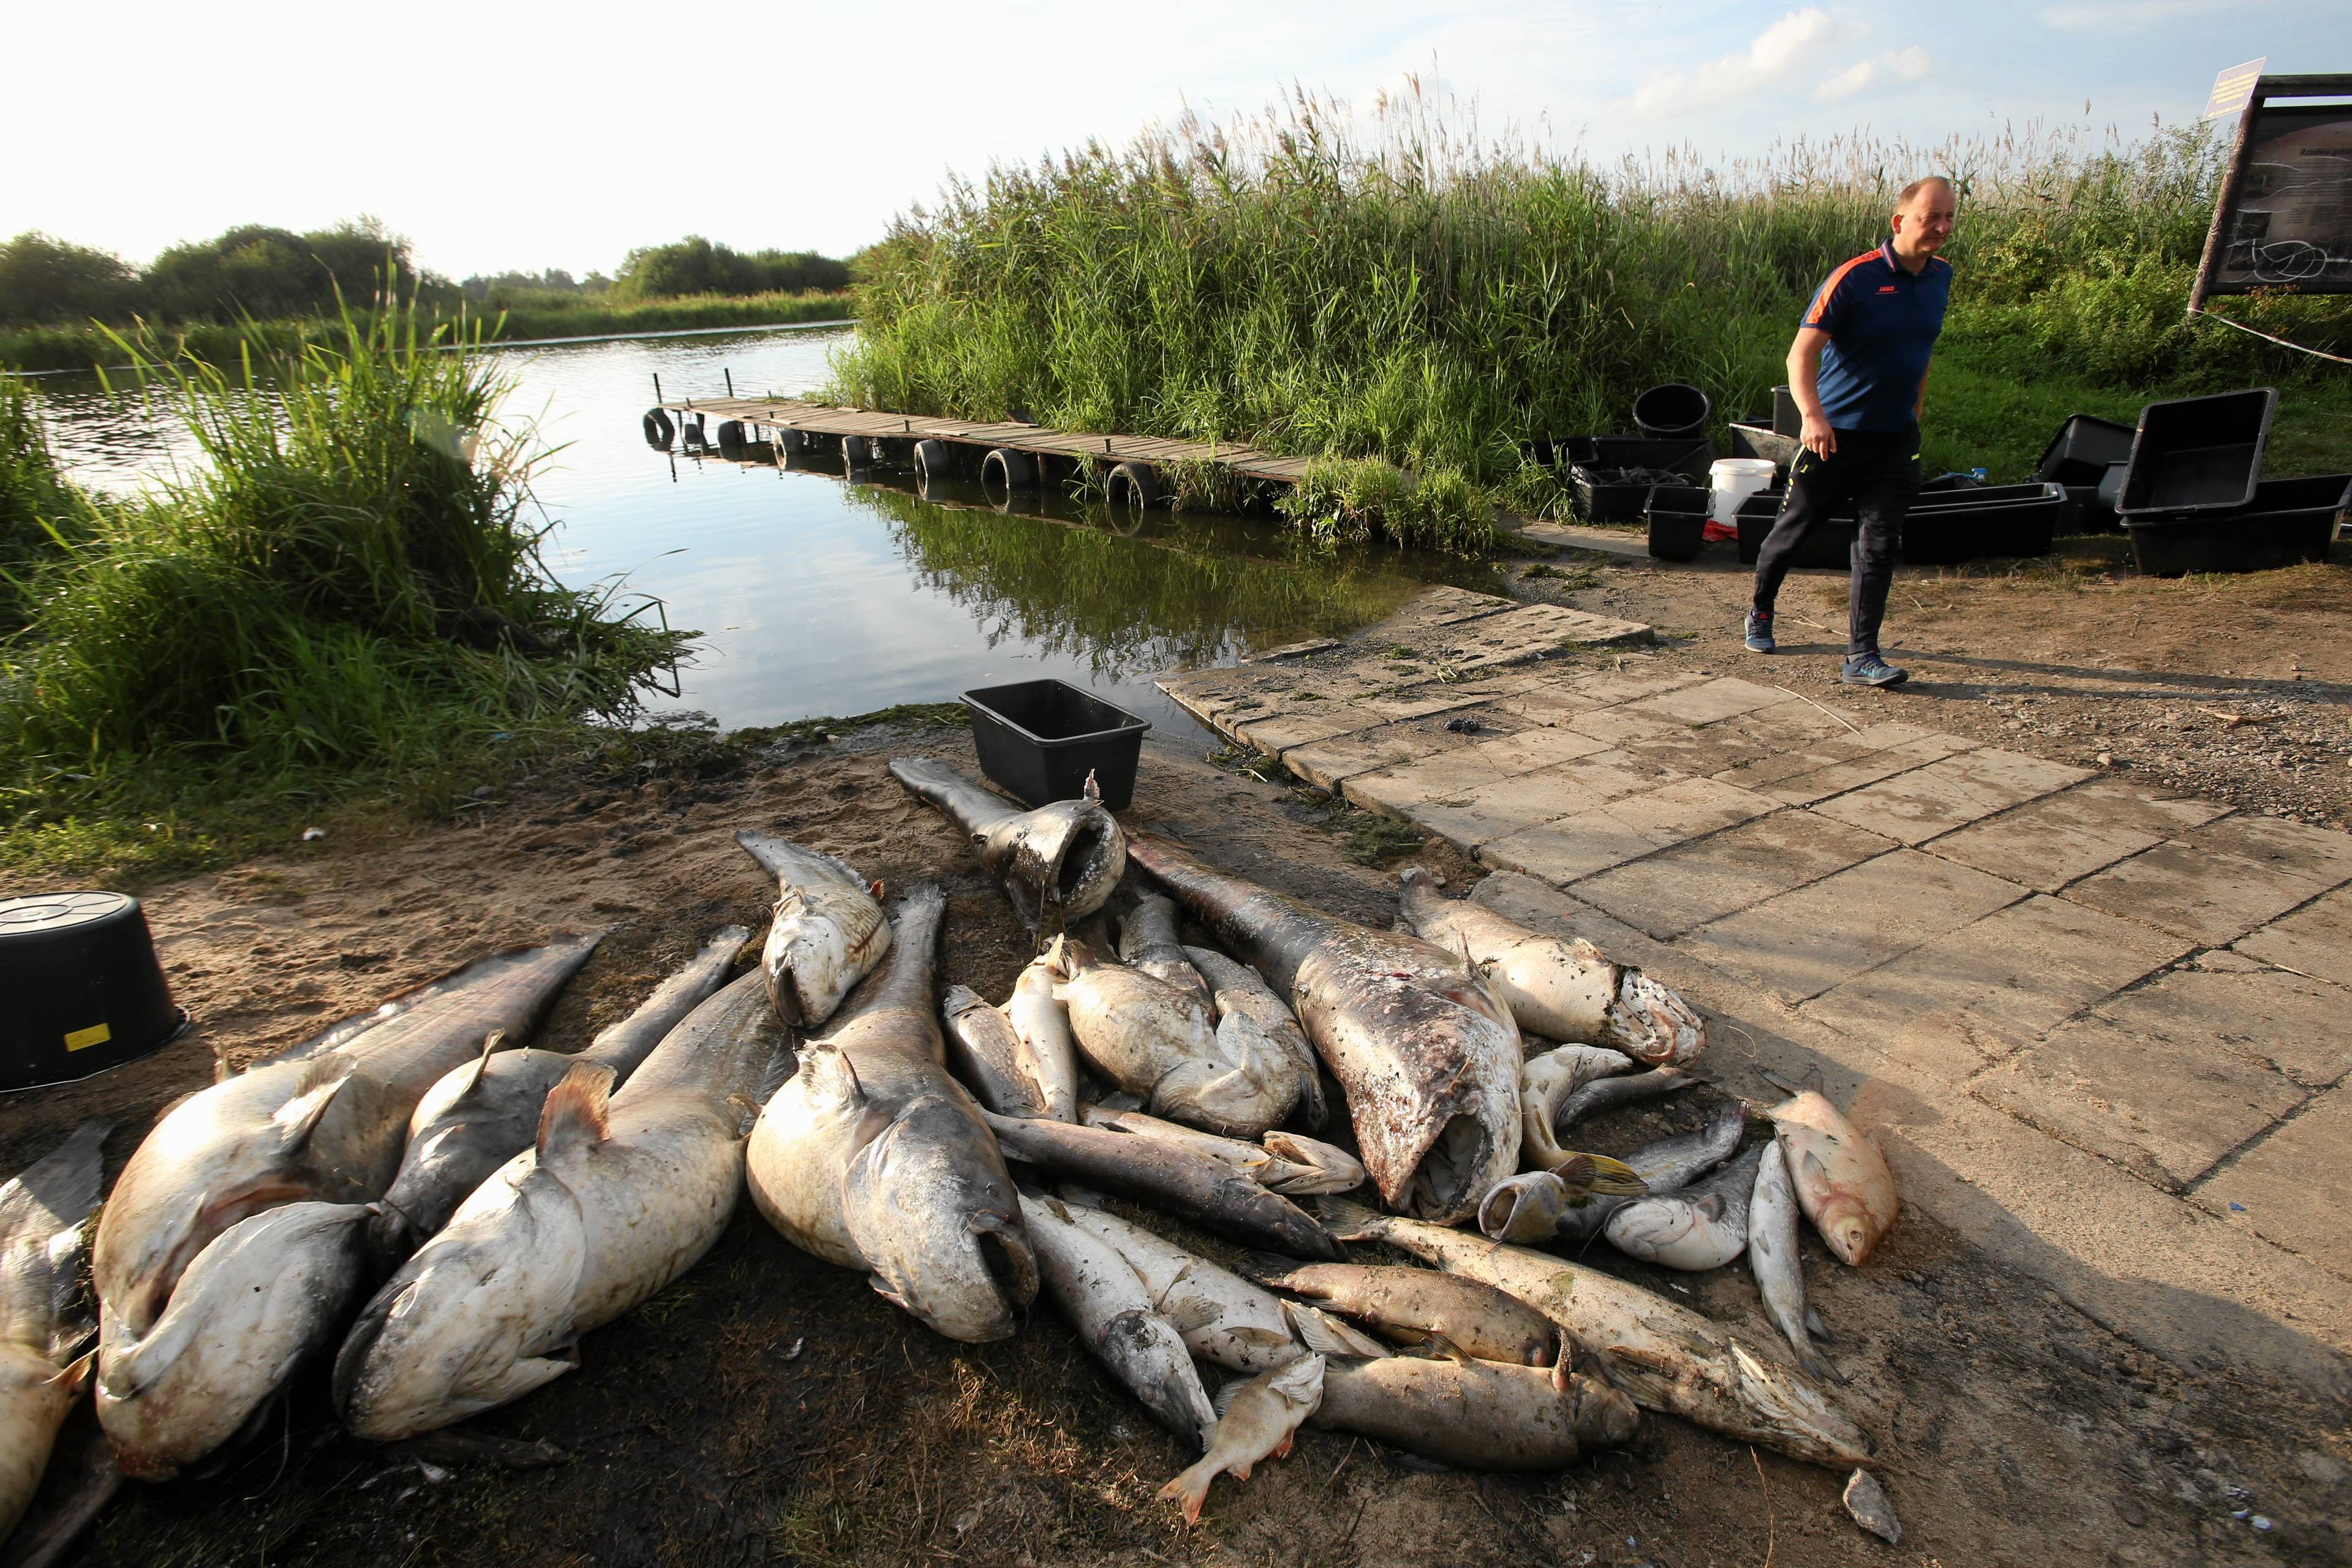 martwe ryby ułożone na brzegu rzeki